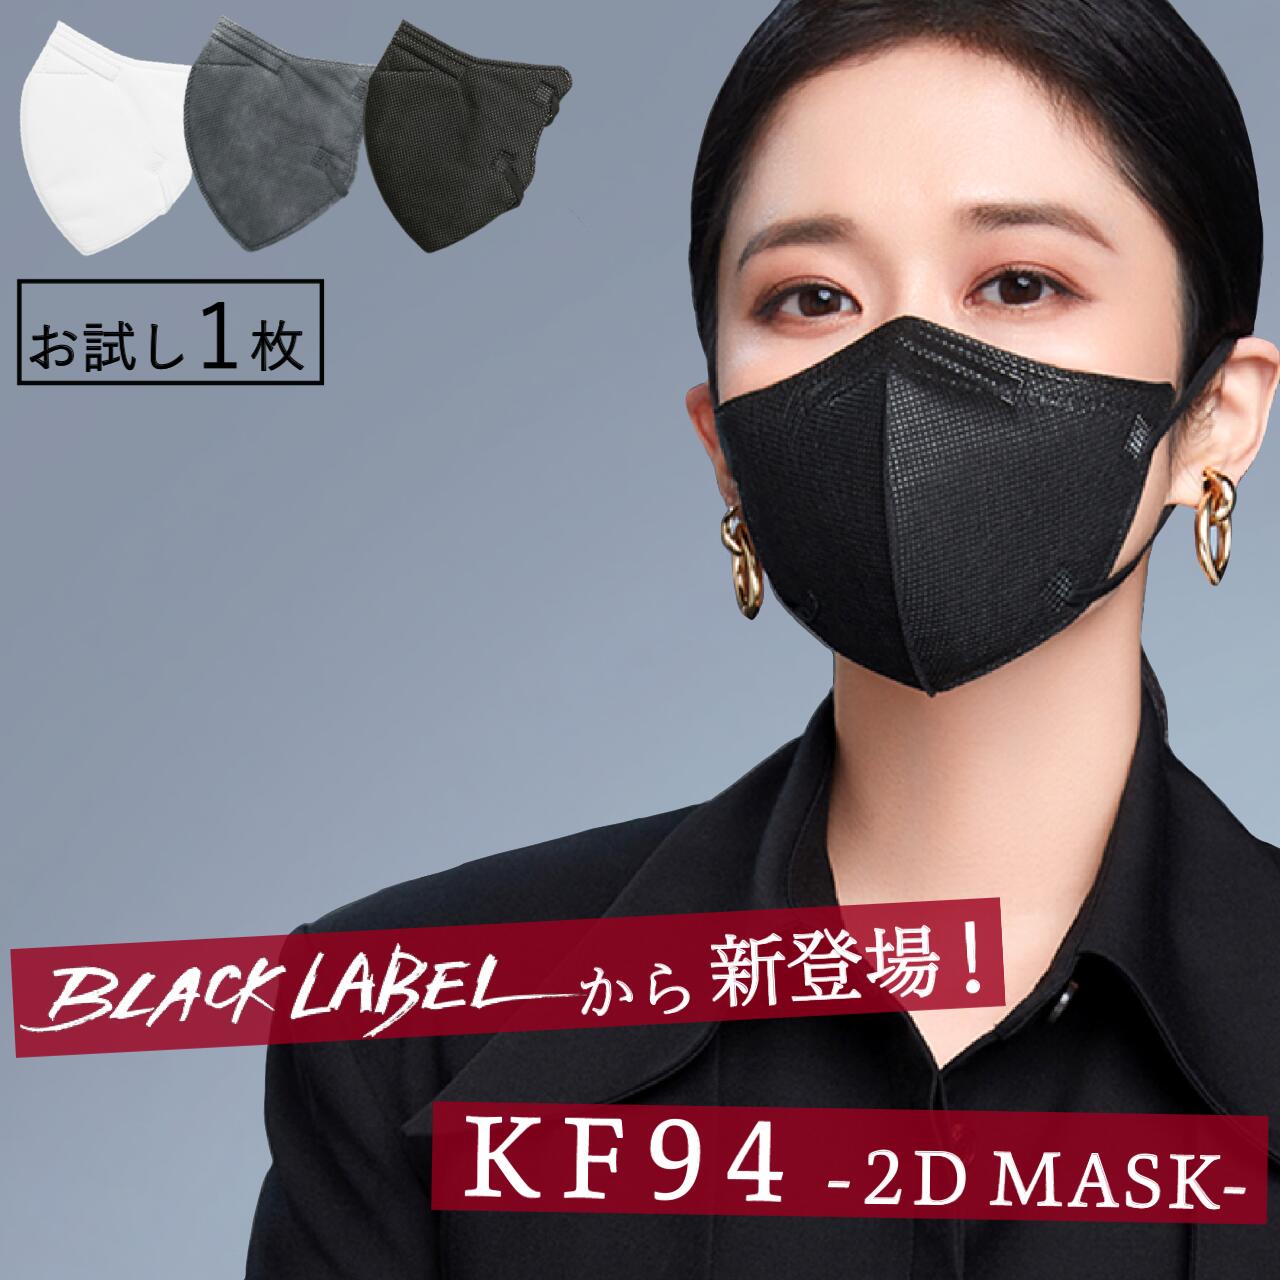 【お試し1枚入り】KF94 BLACKLABEL CHARMZONE 送料無料 K94 マスク ホワイト ブラック グレー 大きめ 1枚入り 韓国マスク 韓国製 不織布 マスク 不織布マスク カラーマスク 血色マスク KF94マスク 個包装 お出かけ 旅行